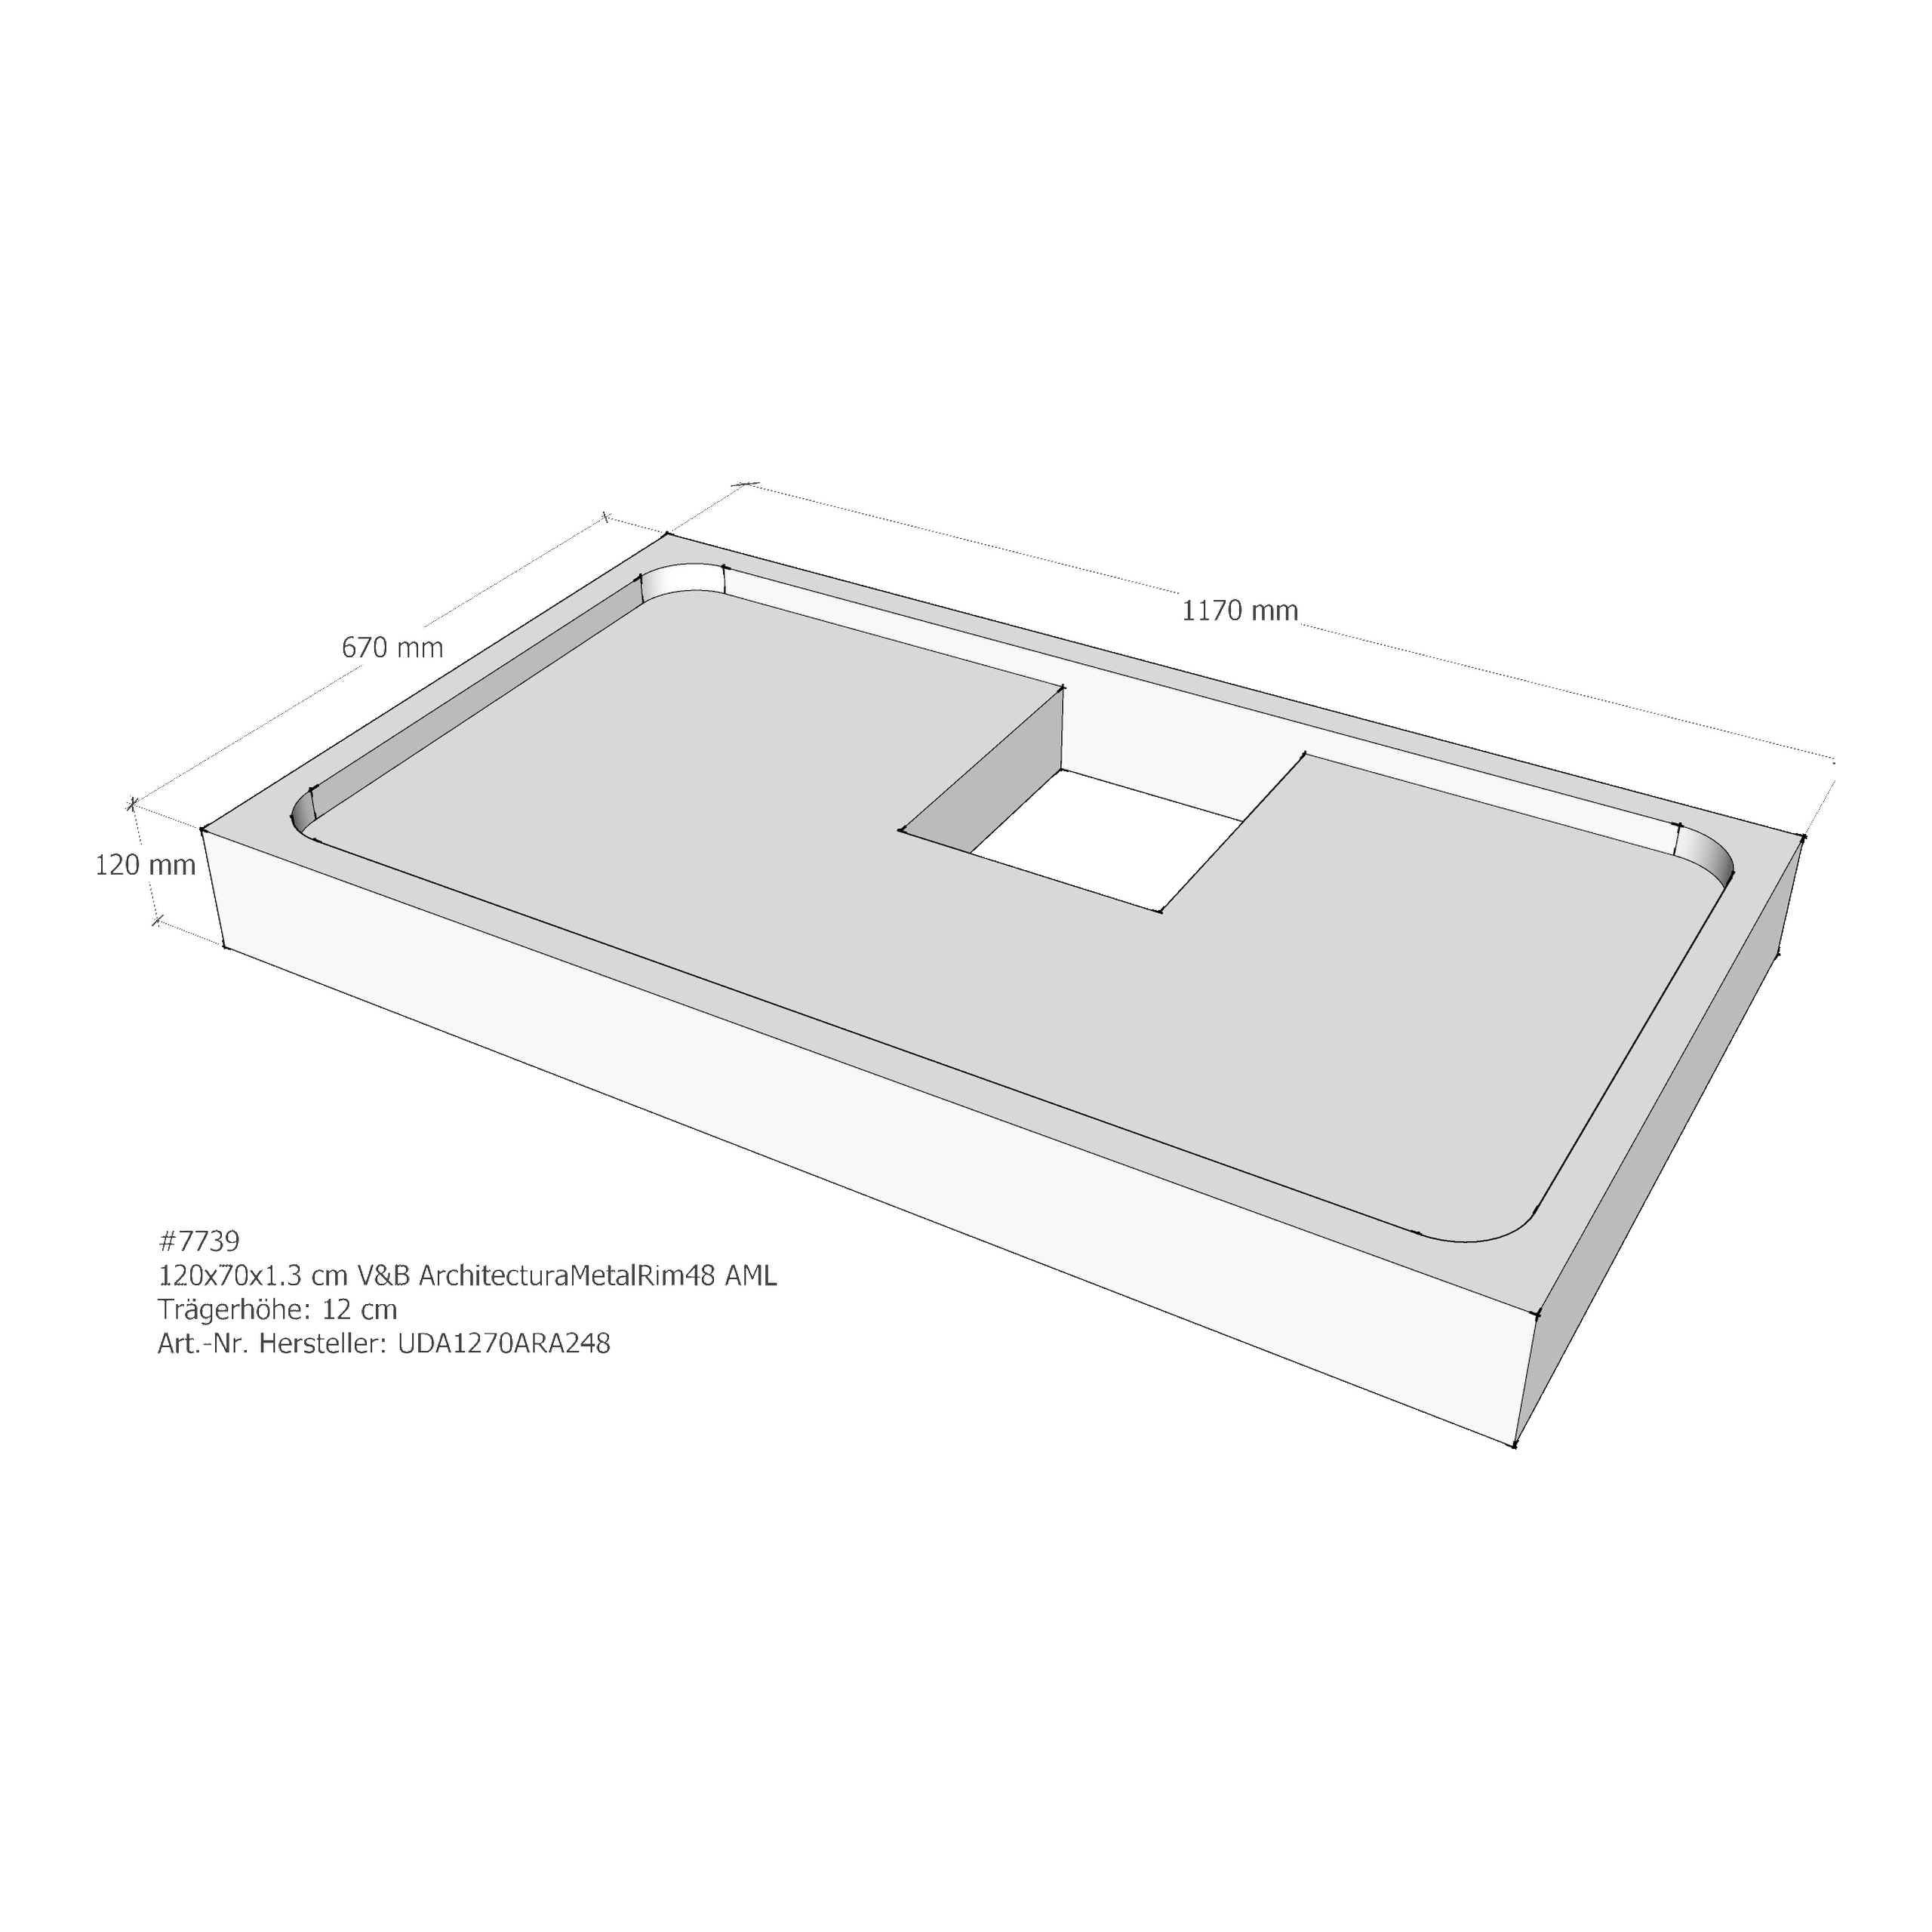 Duschwannenträger für Villeroy & Boch Architectura MetalRim 120 × 70 × 1,3 cm